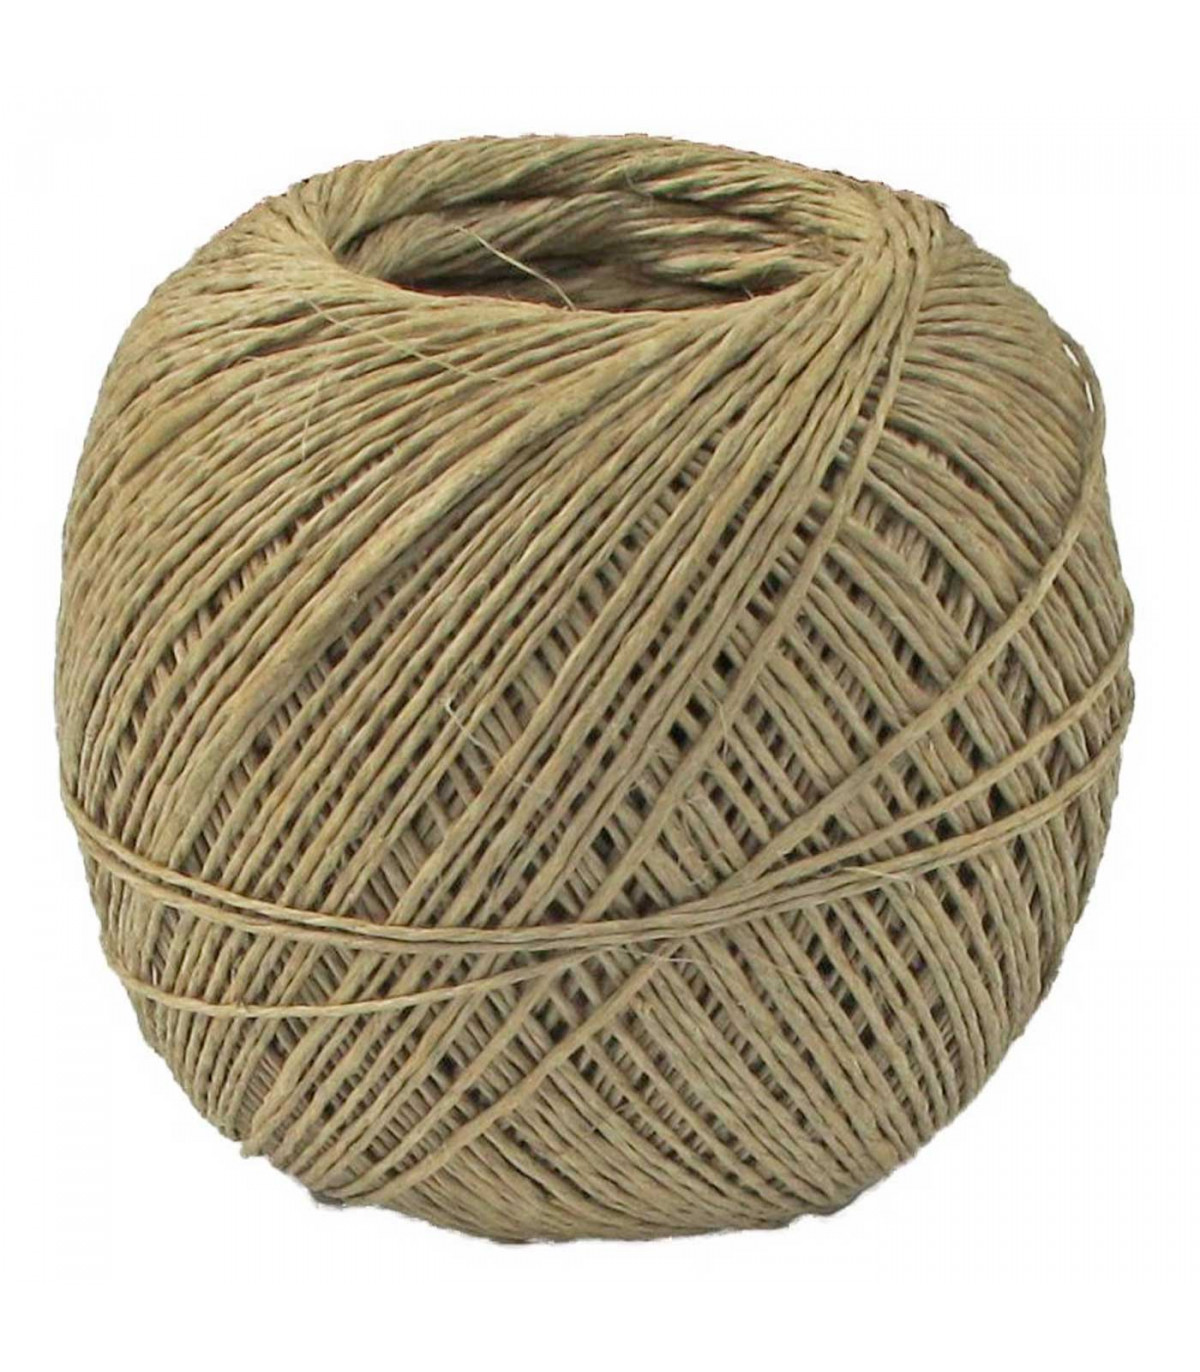 Tradineur - Ovillo de hilo pulido, madeja, bobina de cordón para atar  embutidos, chorizos, salchichones, cocinar (Marrón claro